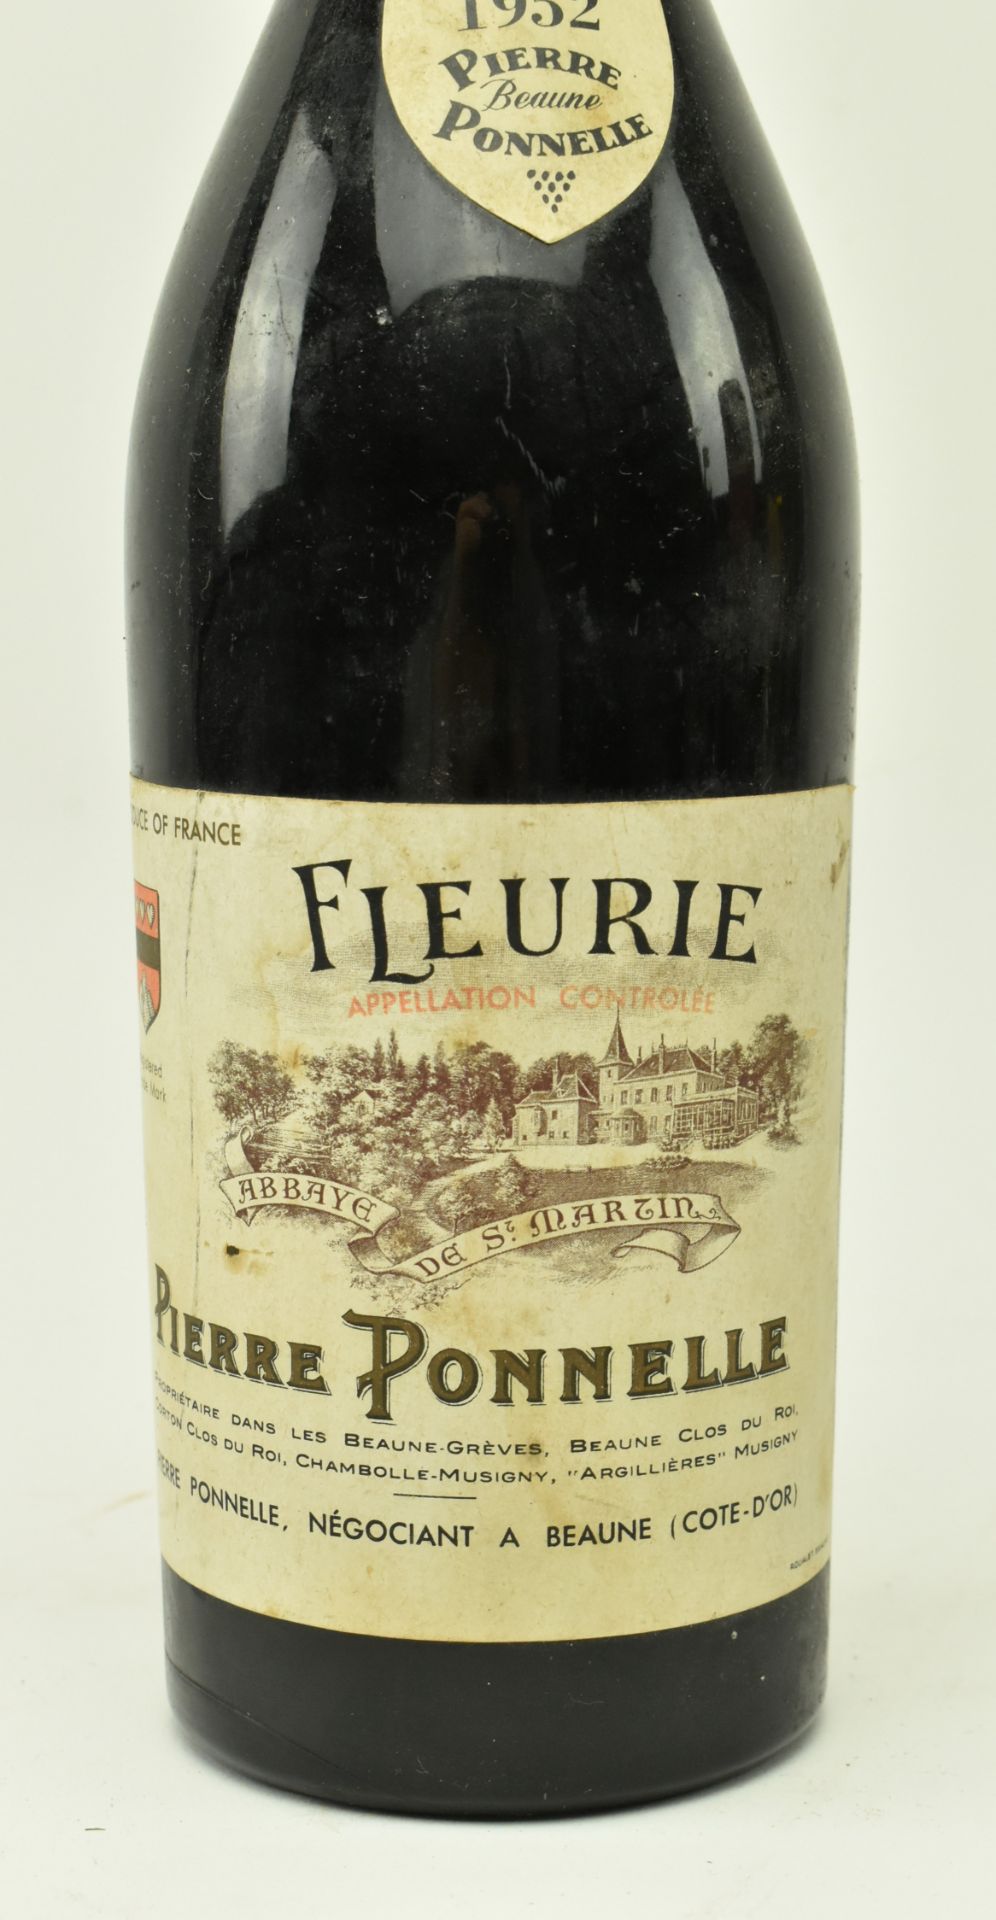 1952 PIERRE PONNELLE FLEURIE RED WINE BOTTLE - Bild 4 aus 6